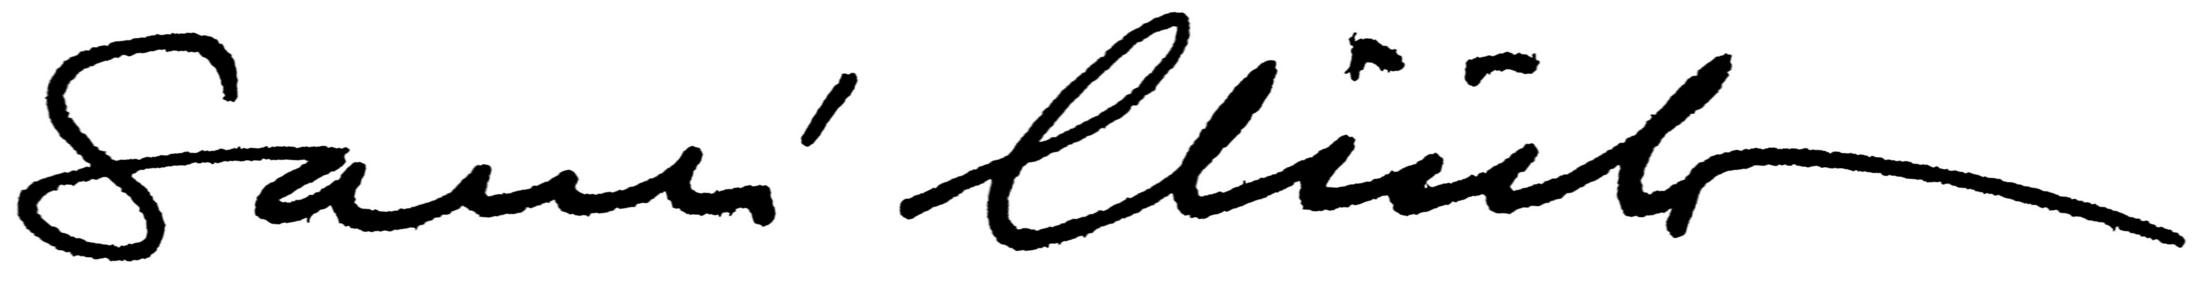 Sauli Niinistö (allekirjoitus)